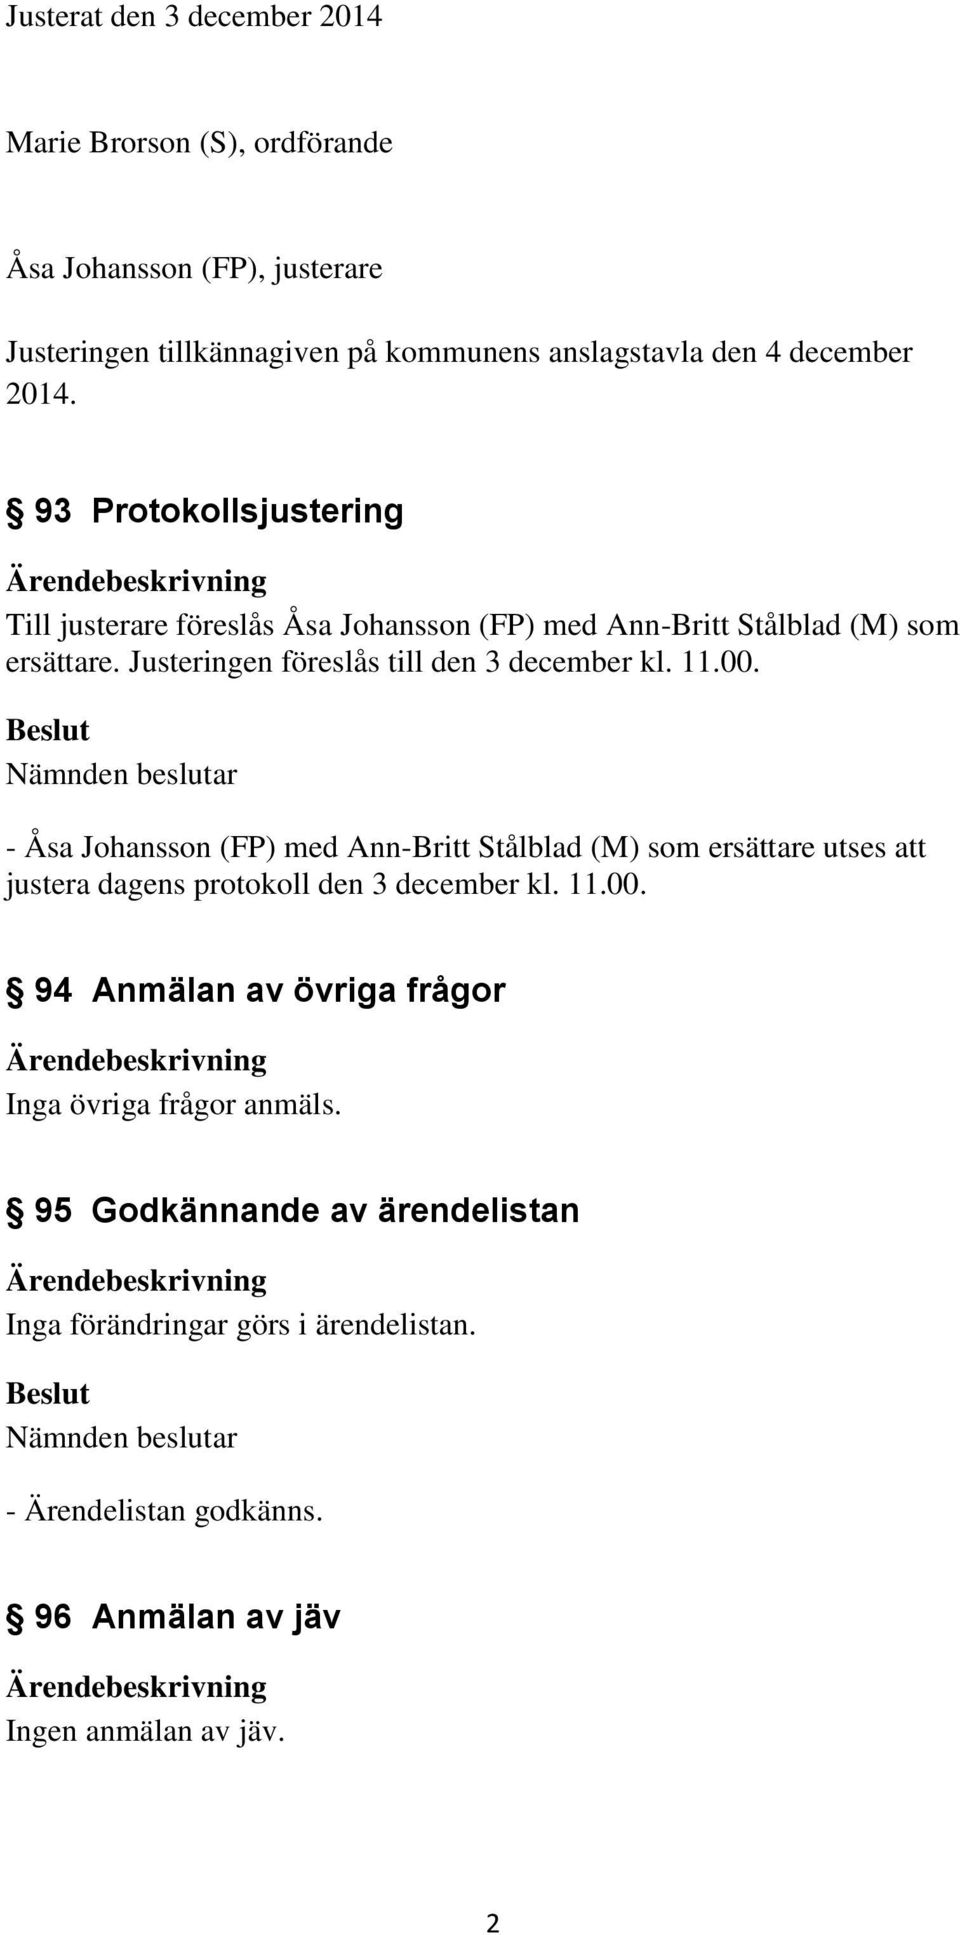 11.00. - Åsa Johansson (FP) med Ann-Britt Stålblad (M) som ersättare utses att justera dagens protokoll den 3 december kl. 11.00. 94 Anmälan av övriga frågor Inga övriga frågor anmäls.